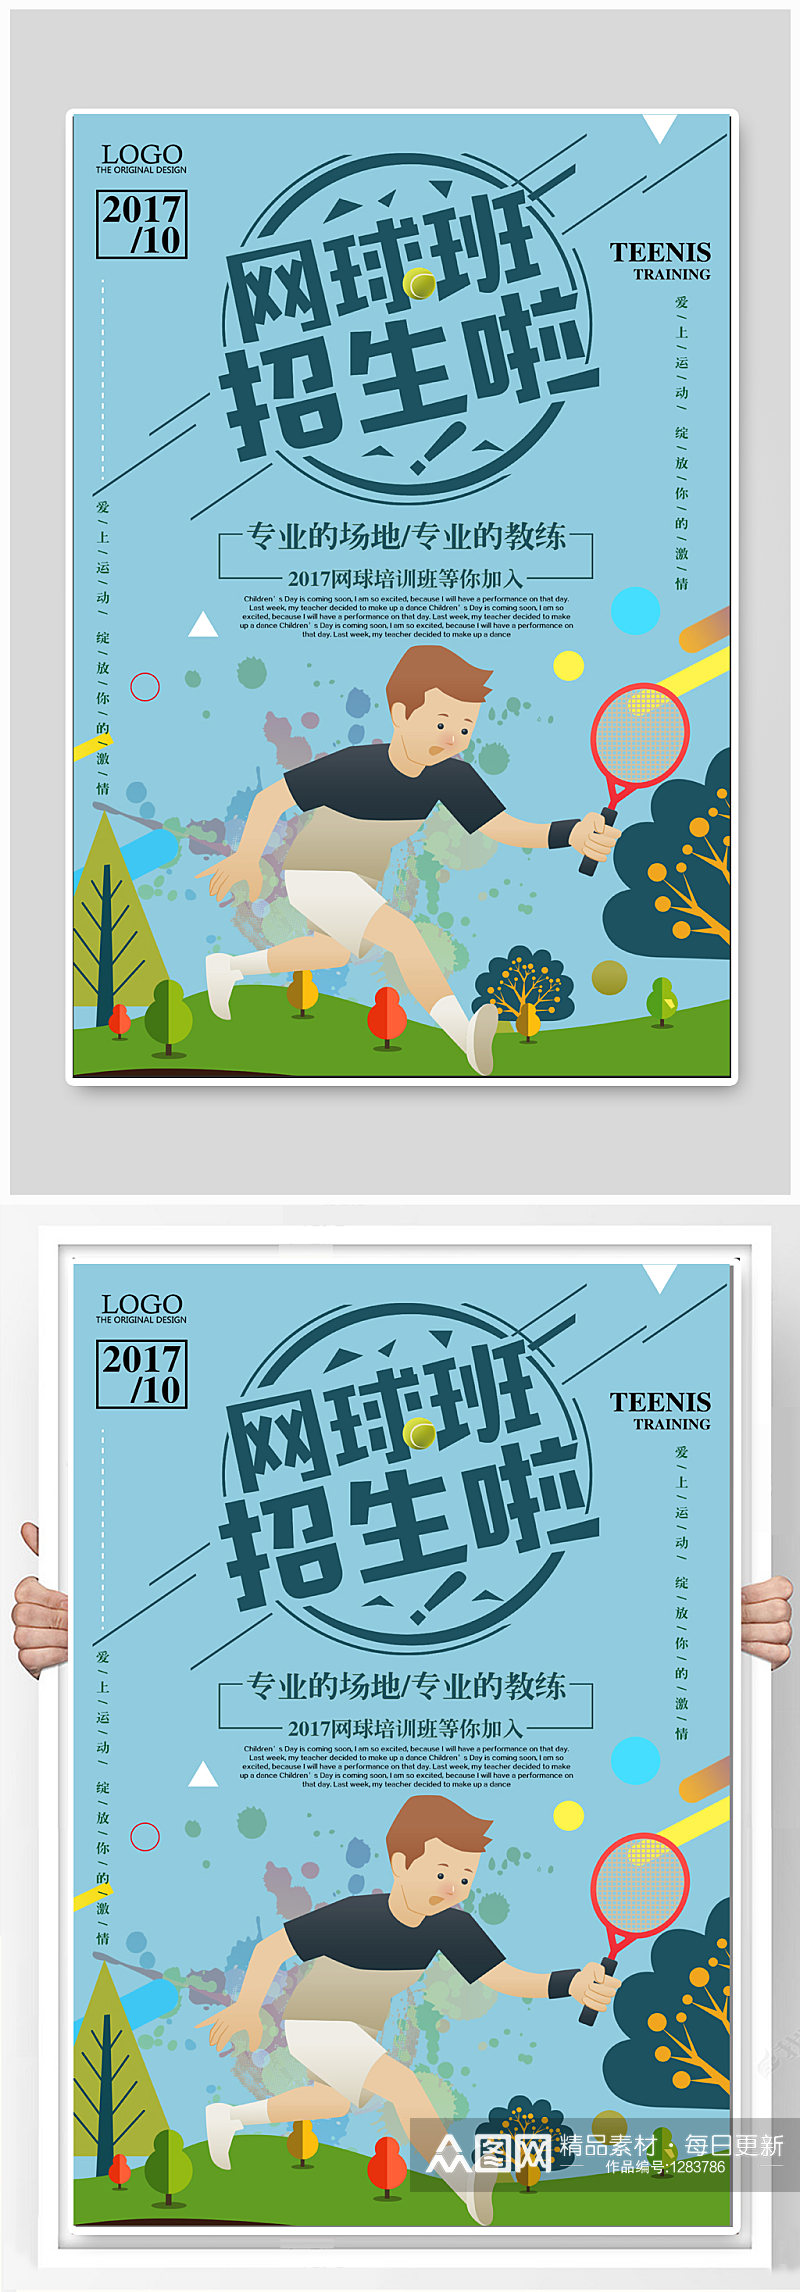 网球班招生宣传海报素材